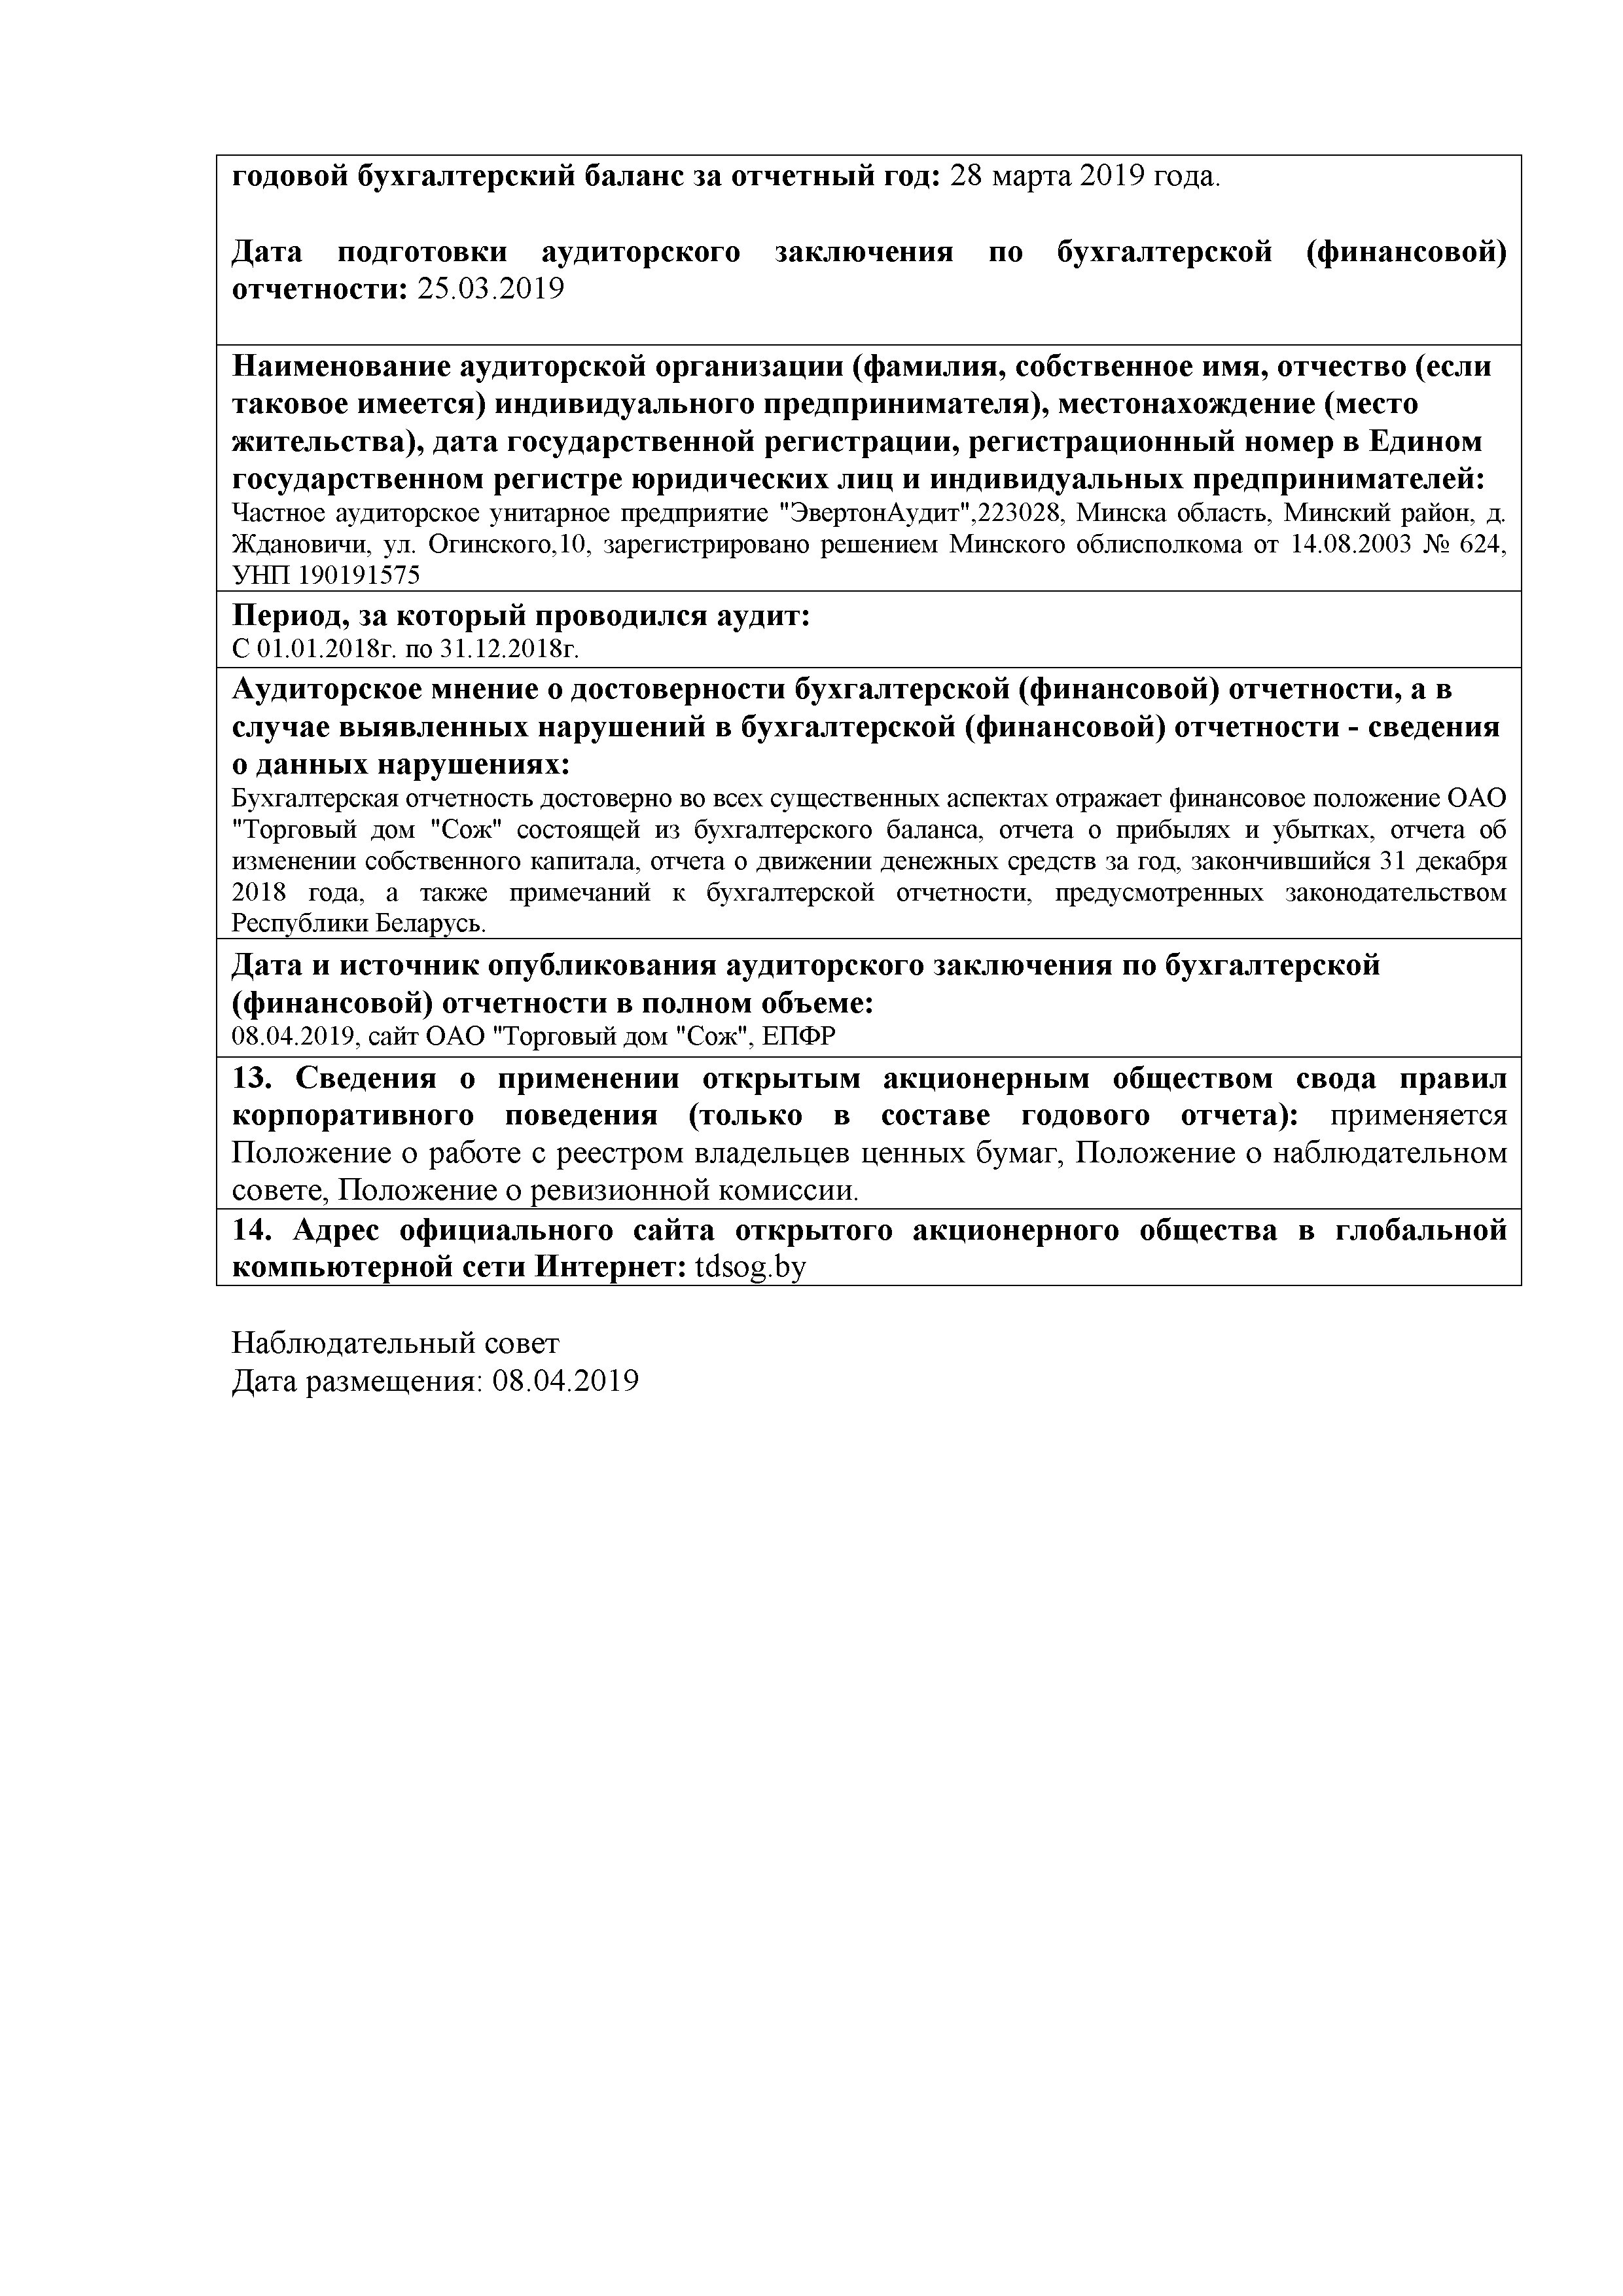 ОАО Торговый дом Сож - Годовой отчет эмитента за 2018 год (страница 3)